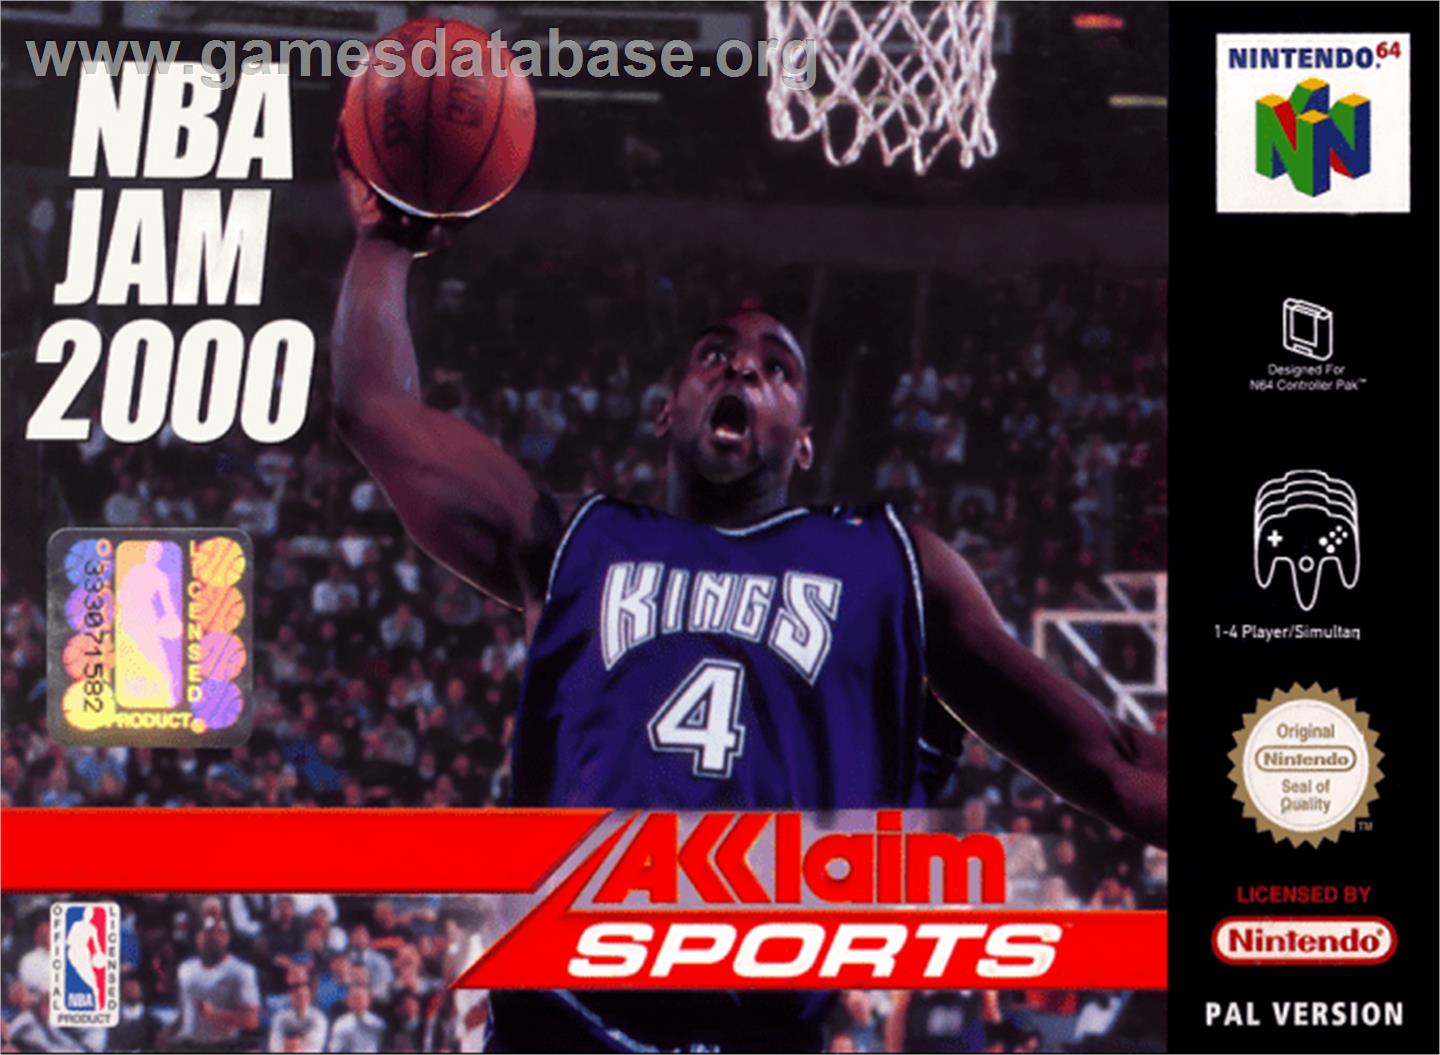 NBA Jam 2000 - Nintendo N64 - Artwork - Box